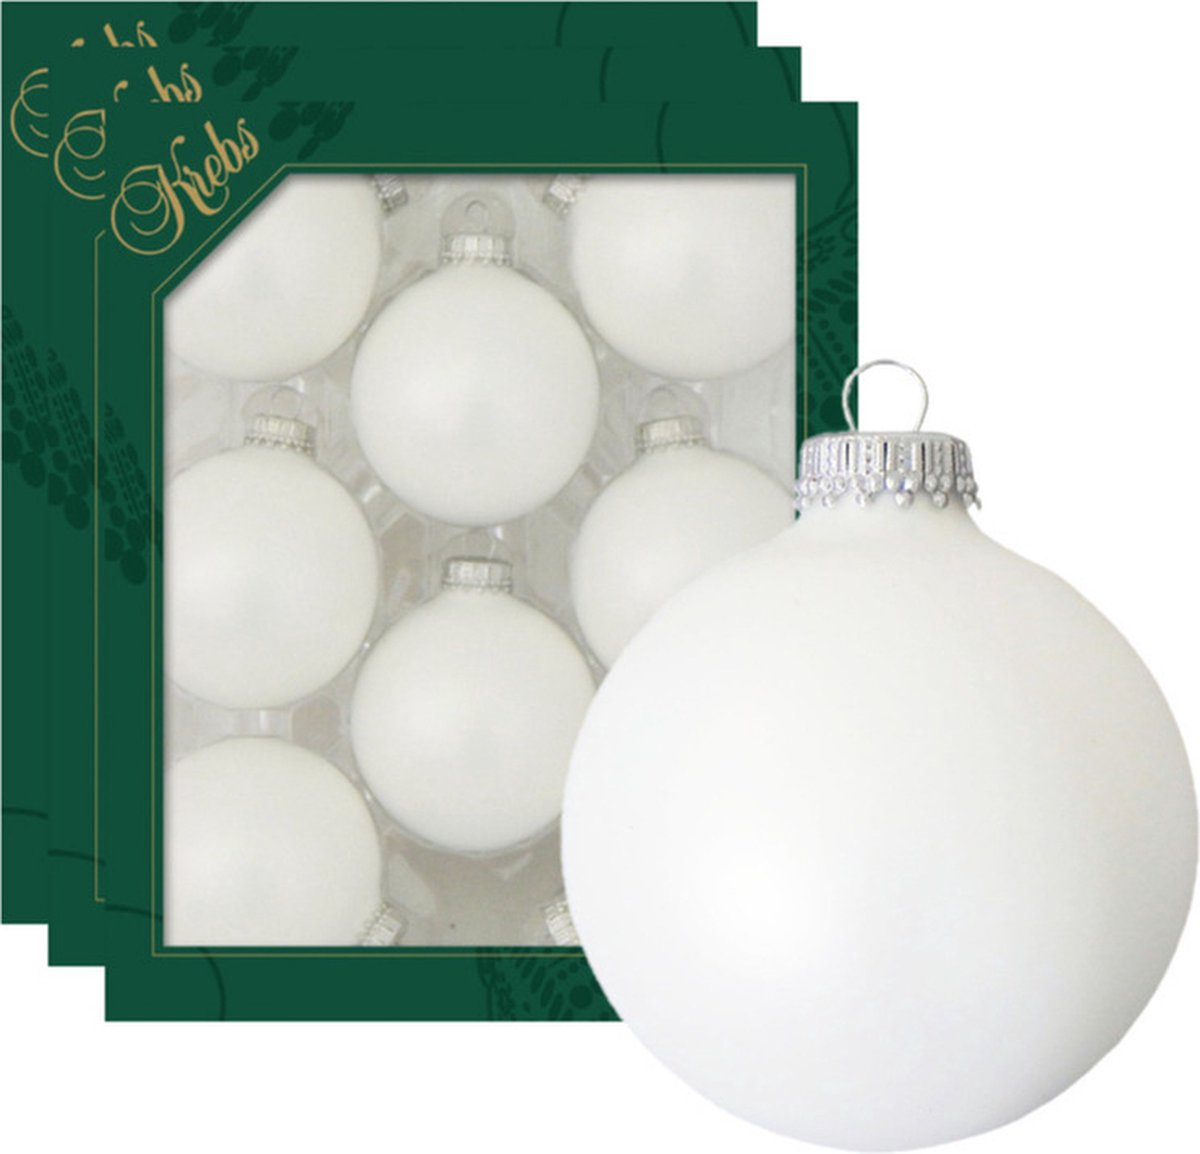 24x Satijn witte glazen kerstballen mat 7 cm kerstboomversiering - Kerstversiering/kerstdecoratie wit